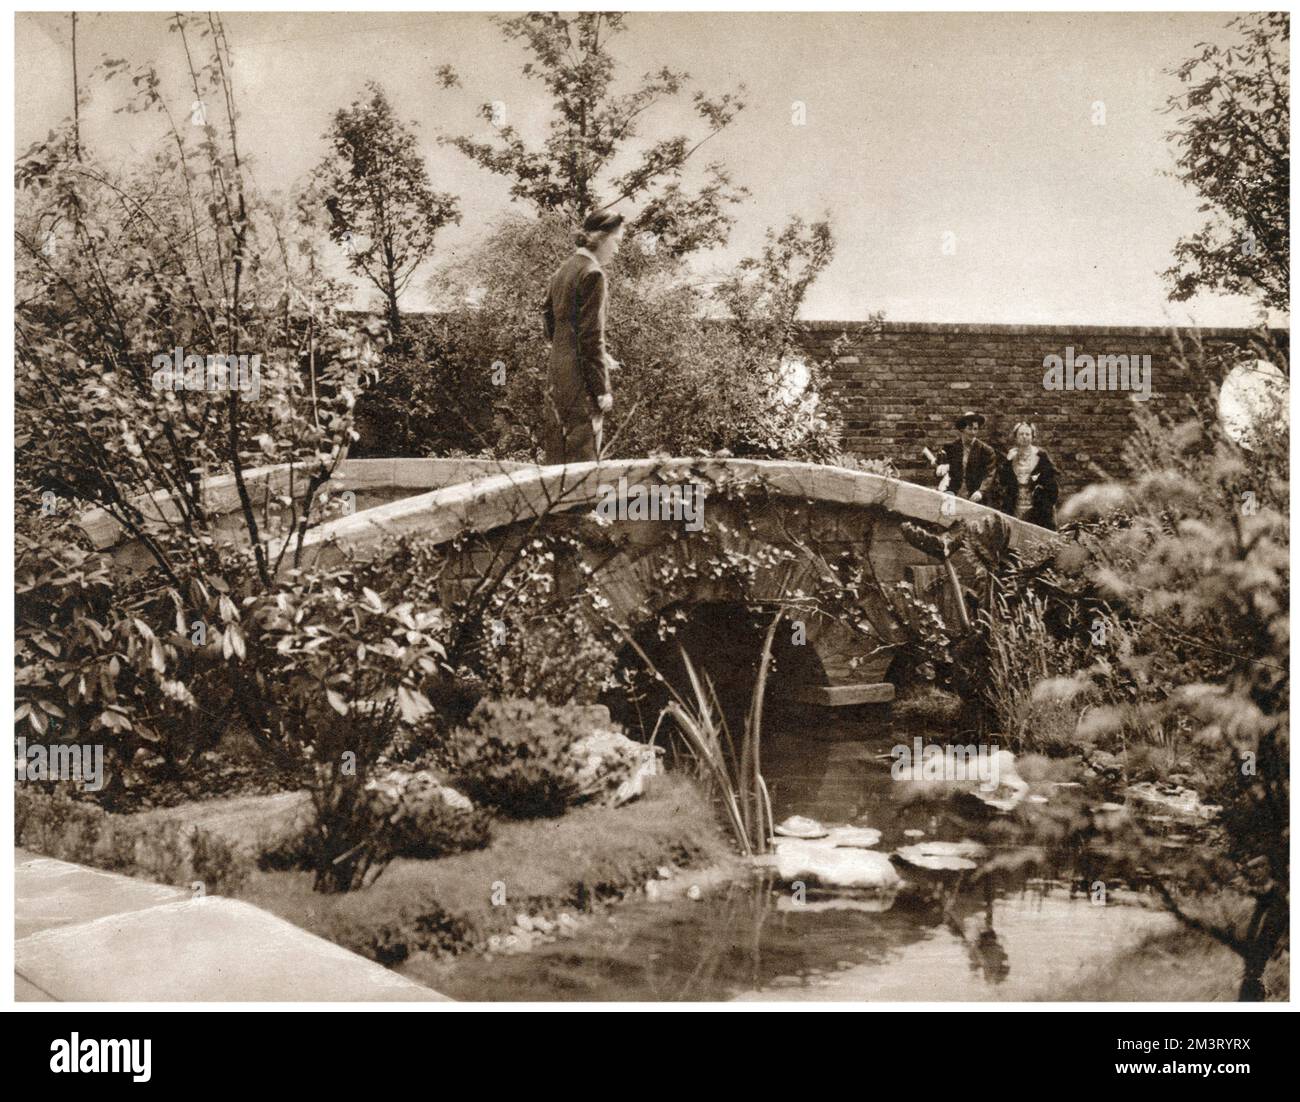 Eine Steinbrücke, die sich über den Fluss erstreckt, umgeben von Bäumen im Old English Garden, Teil des Dachgartens auf der Spitze von Derry und Toms in der Kensington High Street, Eröffnet im Jahr 1938 und zugänglich für die Öffentlichkeit, die einen Schilling für die Einreise bezahlt hat, um Geld für das Queens Institute of District Nursing zu sammeln. Datum: 1938 Stockfoto